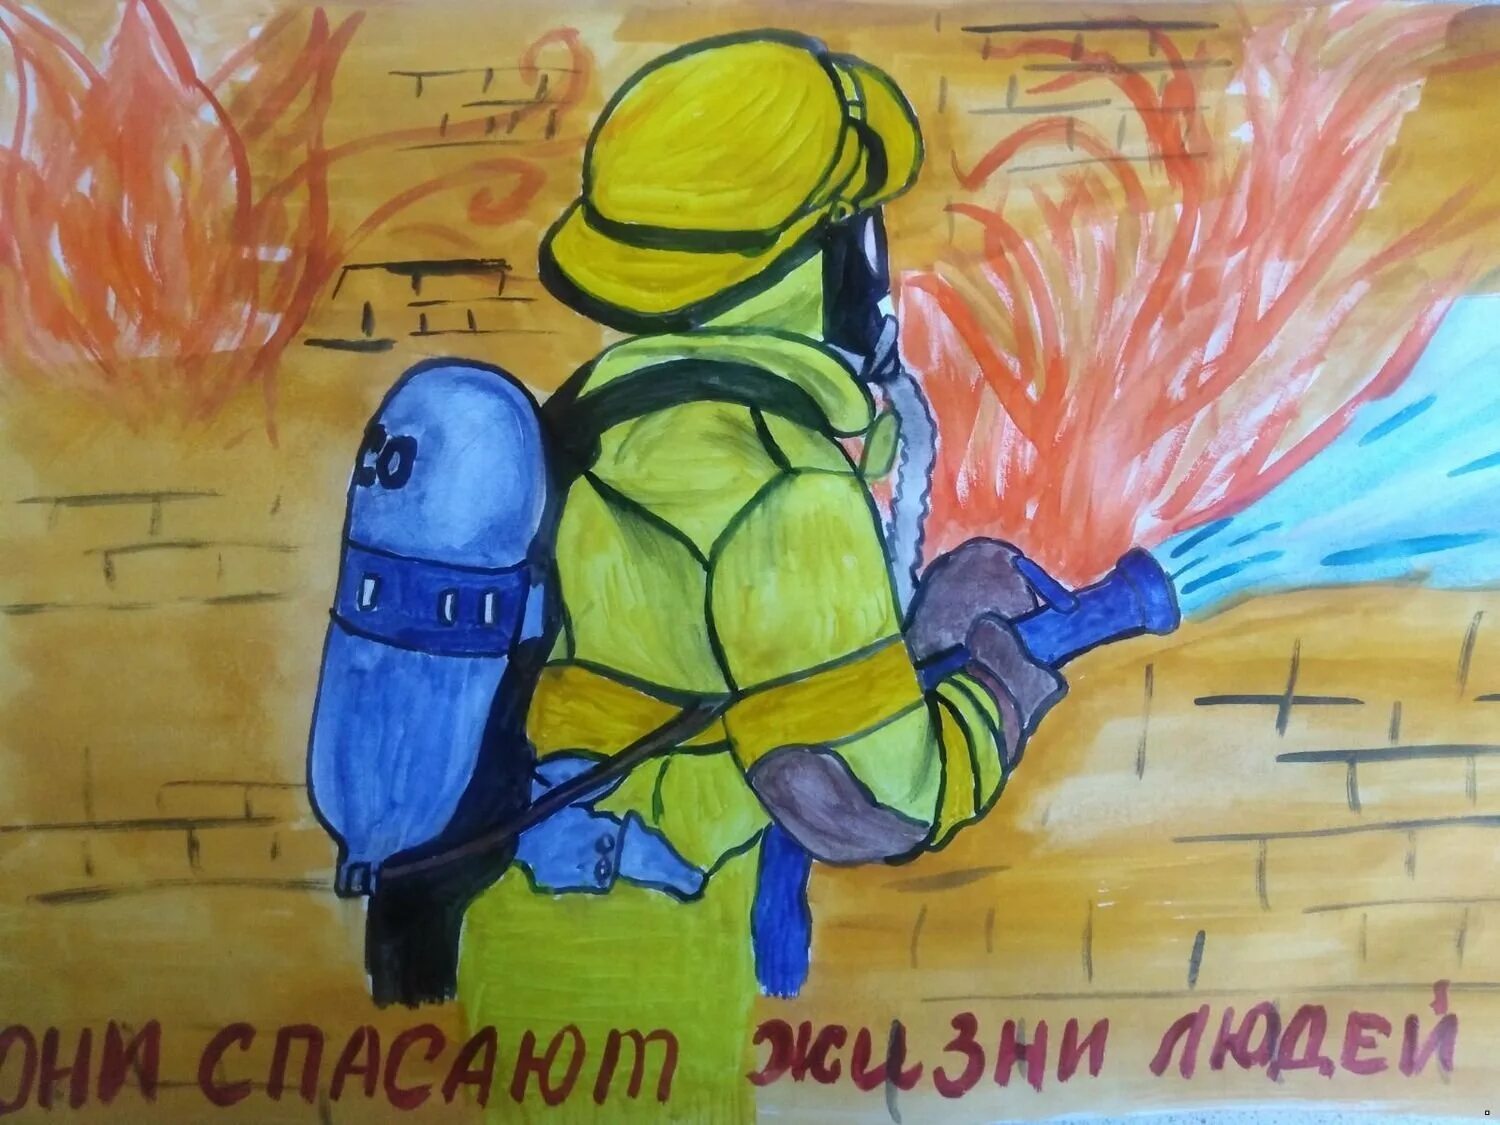 Рисунок на день пожарного. Рисунок ко Дню пожарного. Рисунки на пожарную тематику. Плакат ко Дню пожарника. Рисунок ко Дню пожарной охраны.